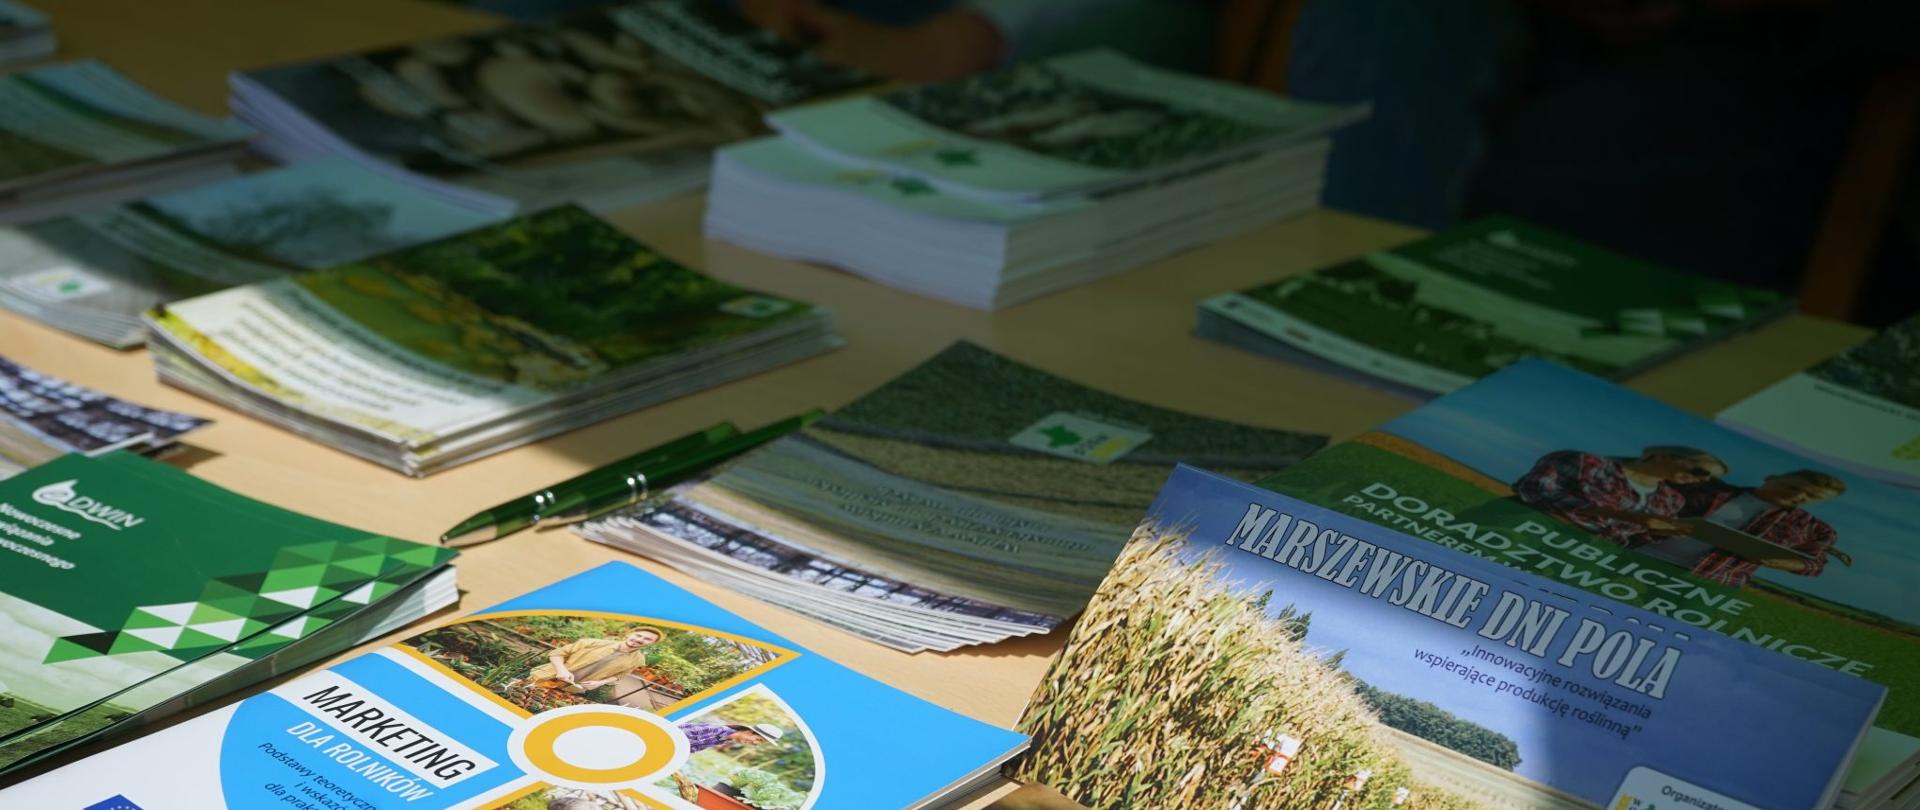 na tole leżą różne książki i broszury dotyczące ochrony środowiska